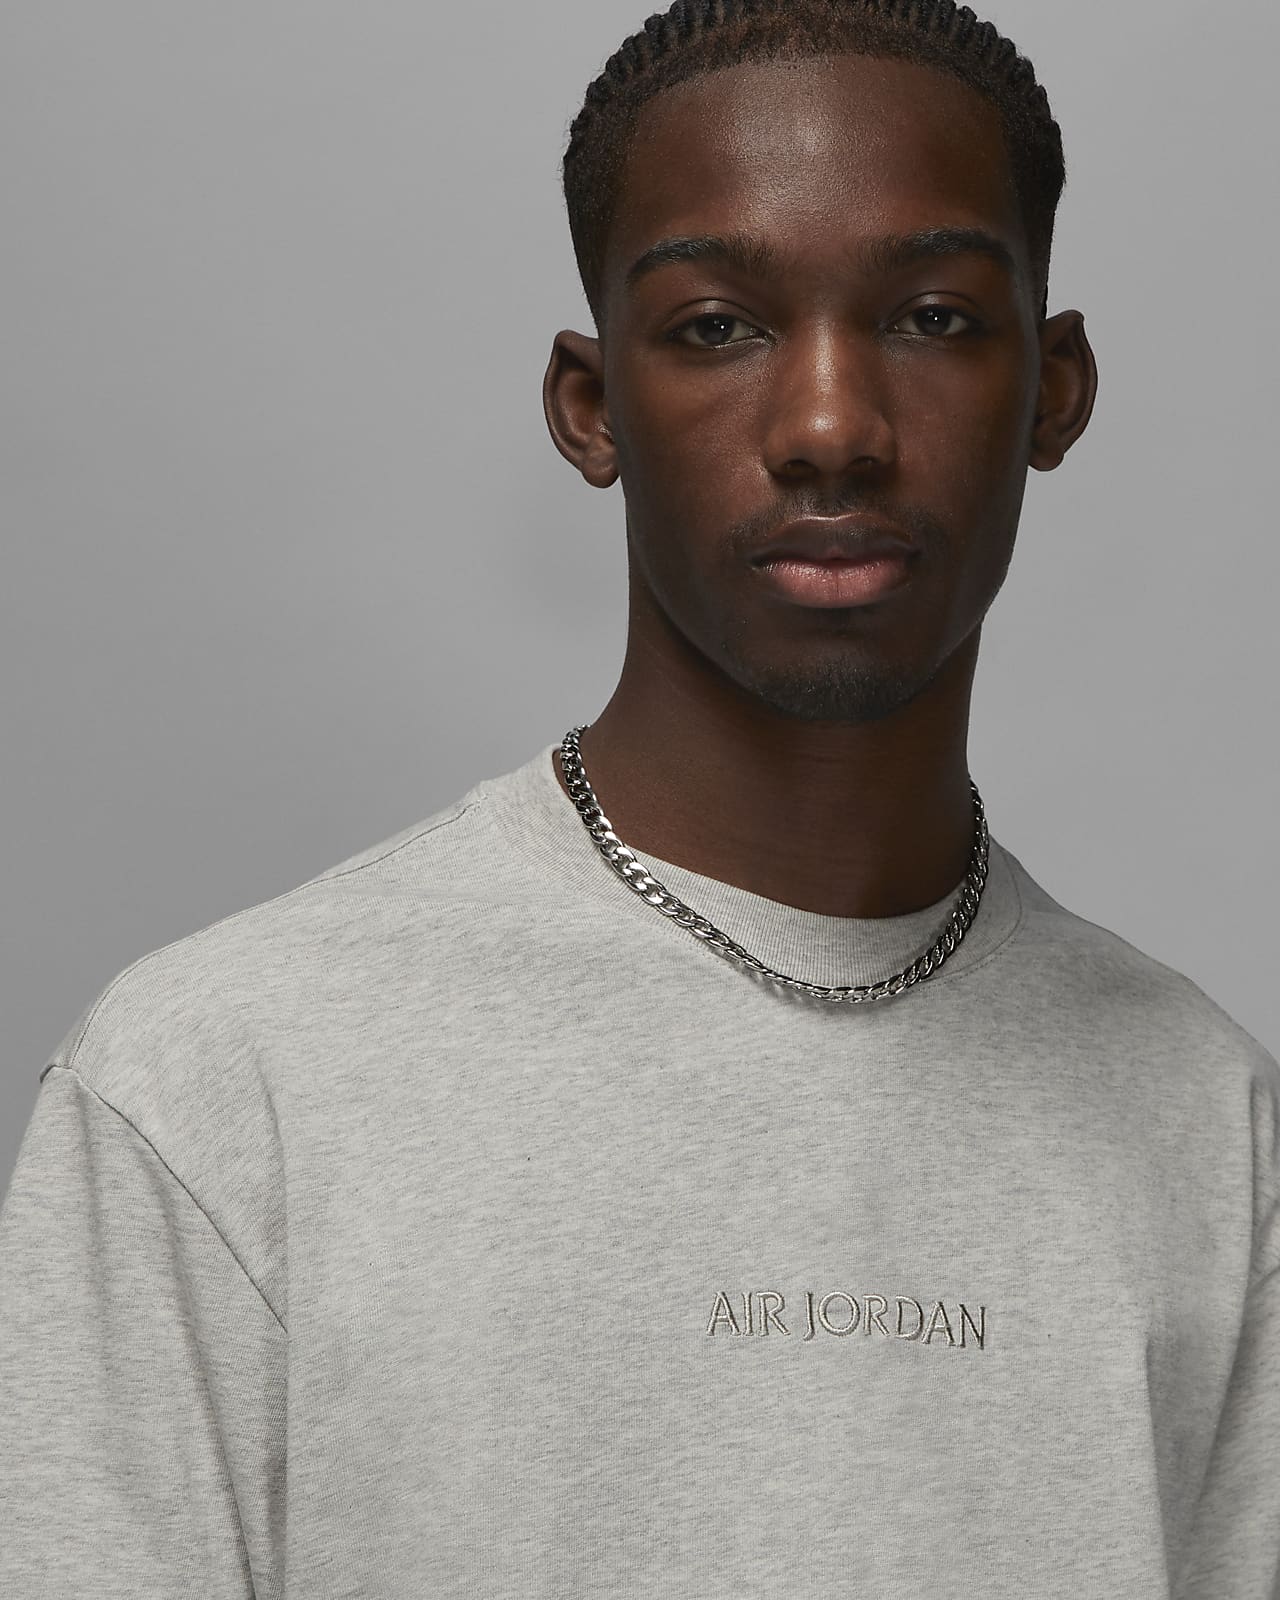 Air Jordan Wordmark Men's T-Shirt. Nike NL